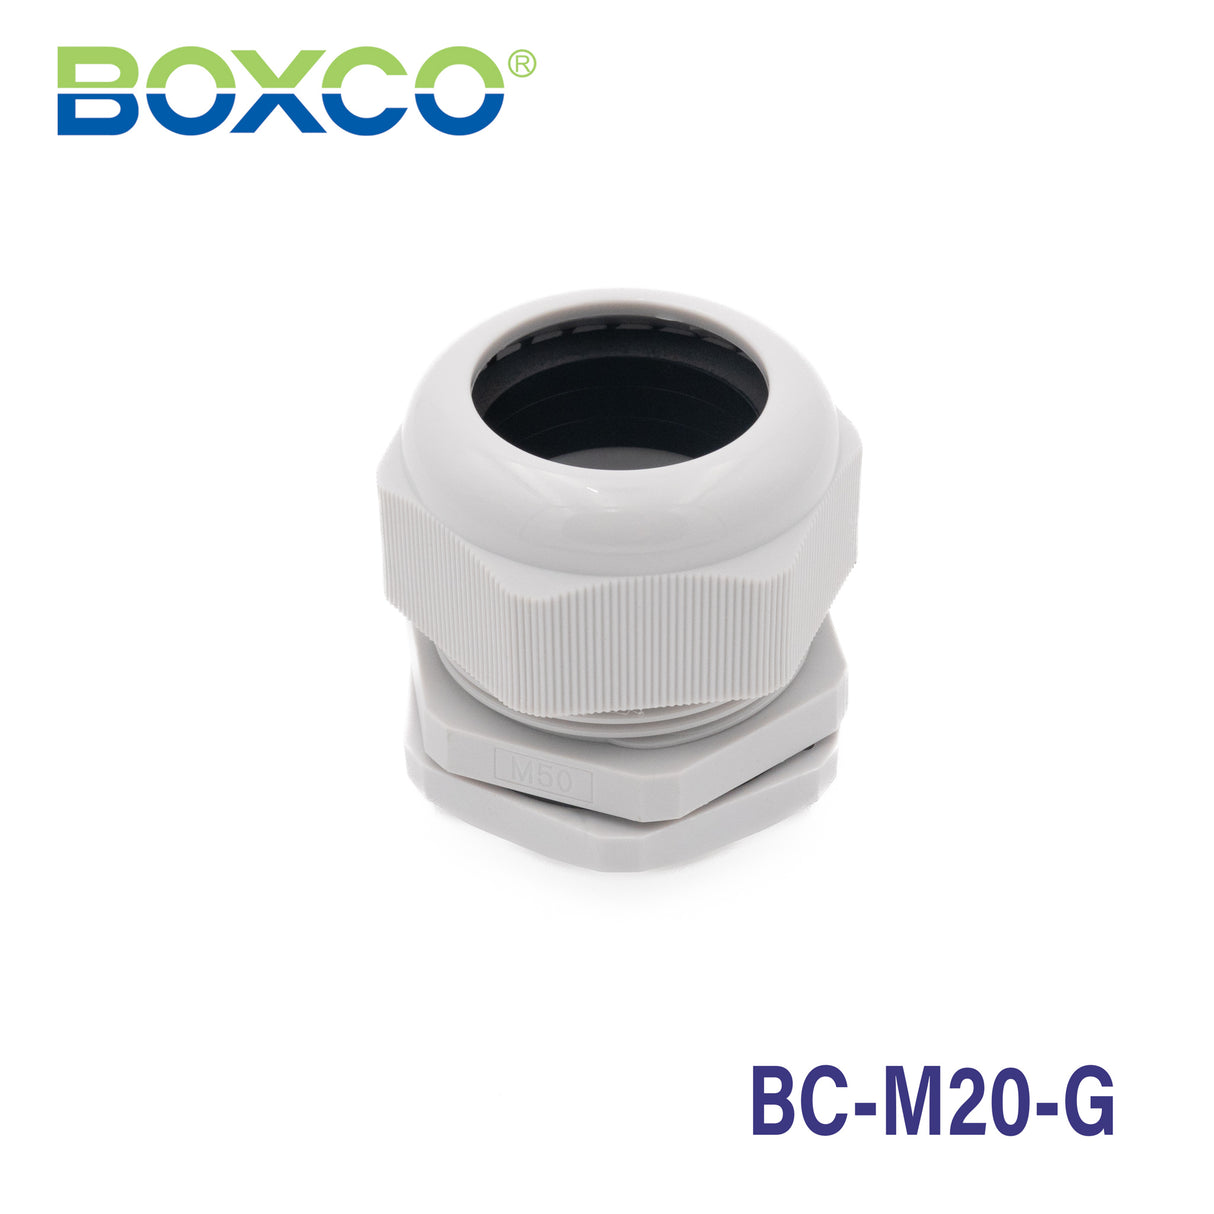 Boxco Plastic Cable Gland BC-M20-G